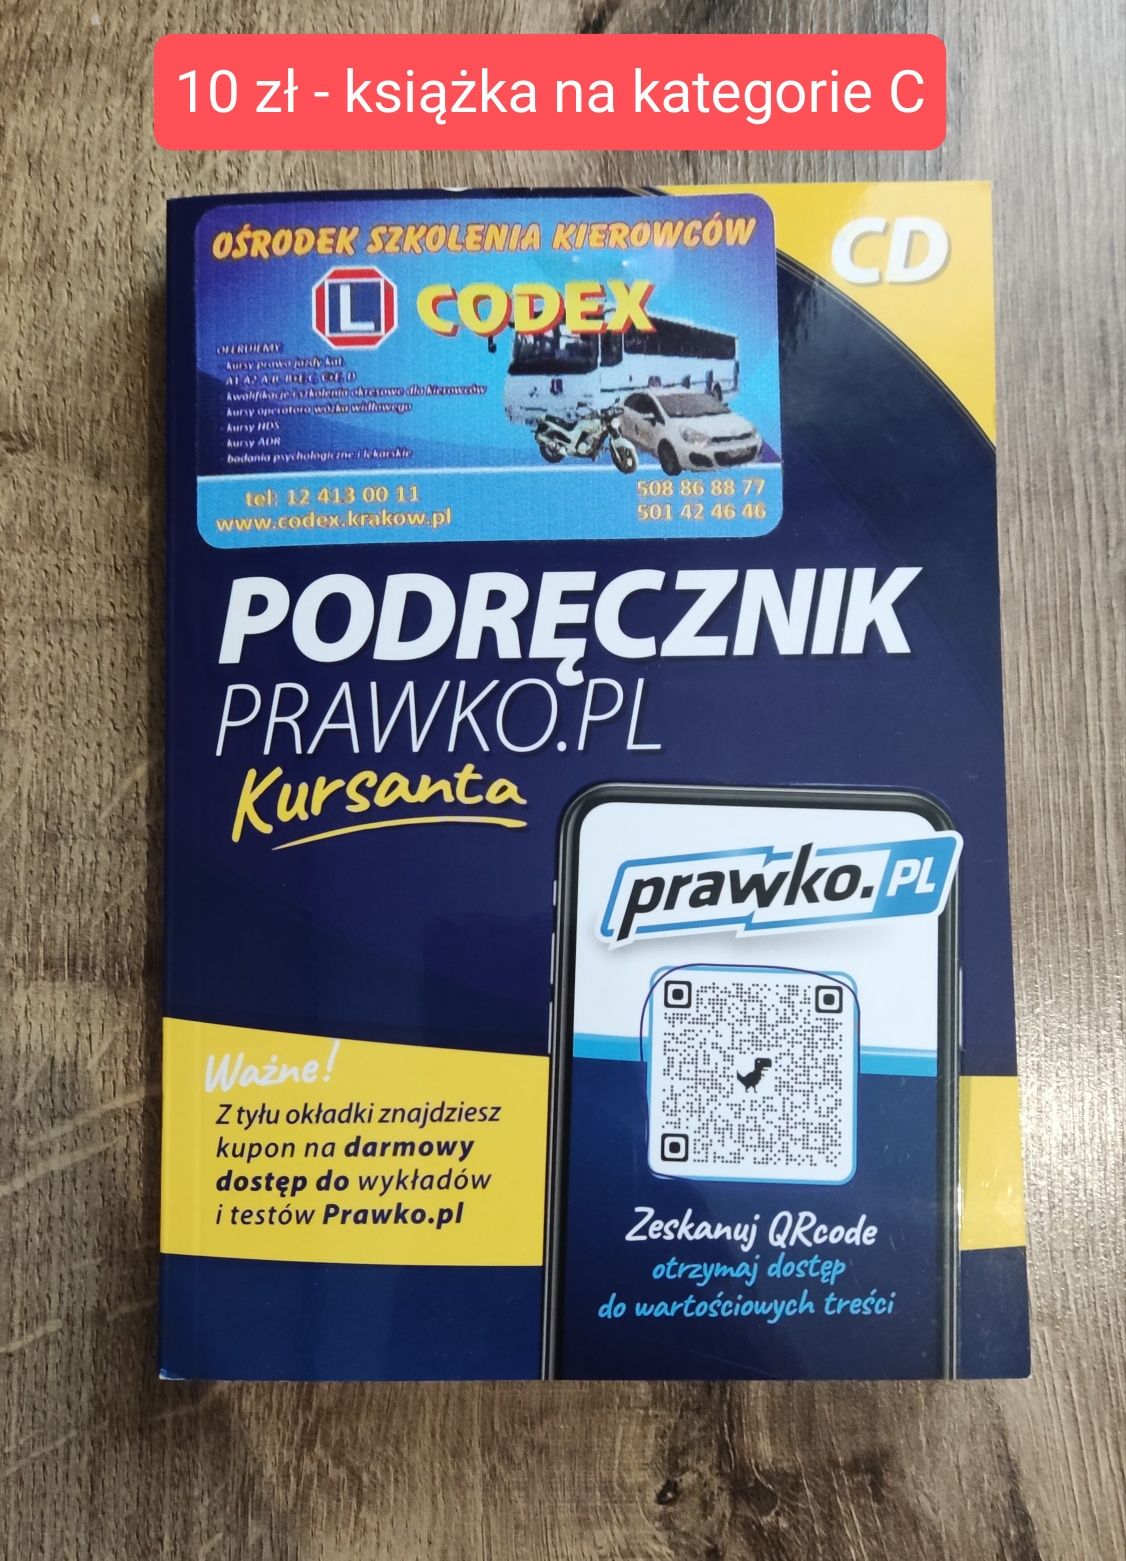 Podręcznik Prawko.pl kategoria C